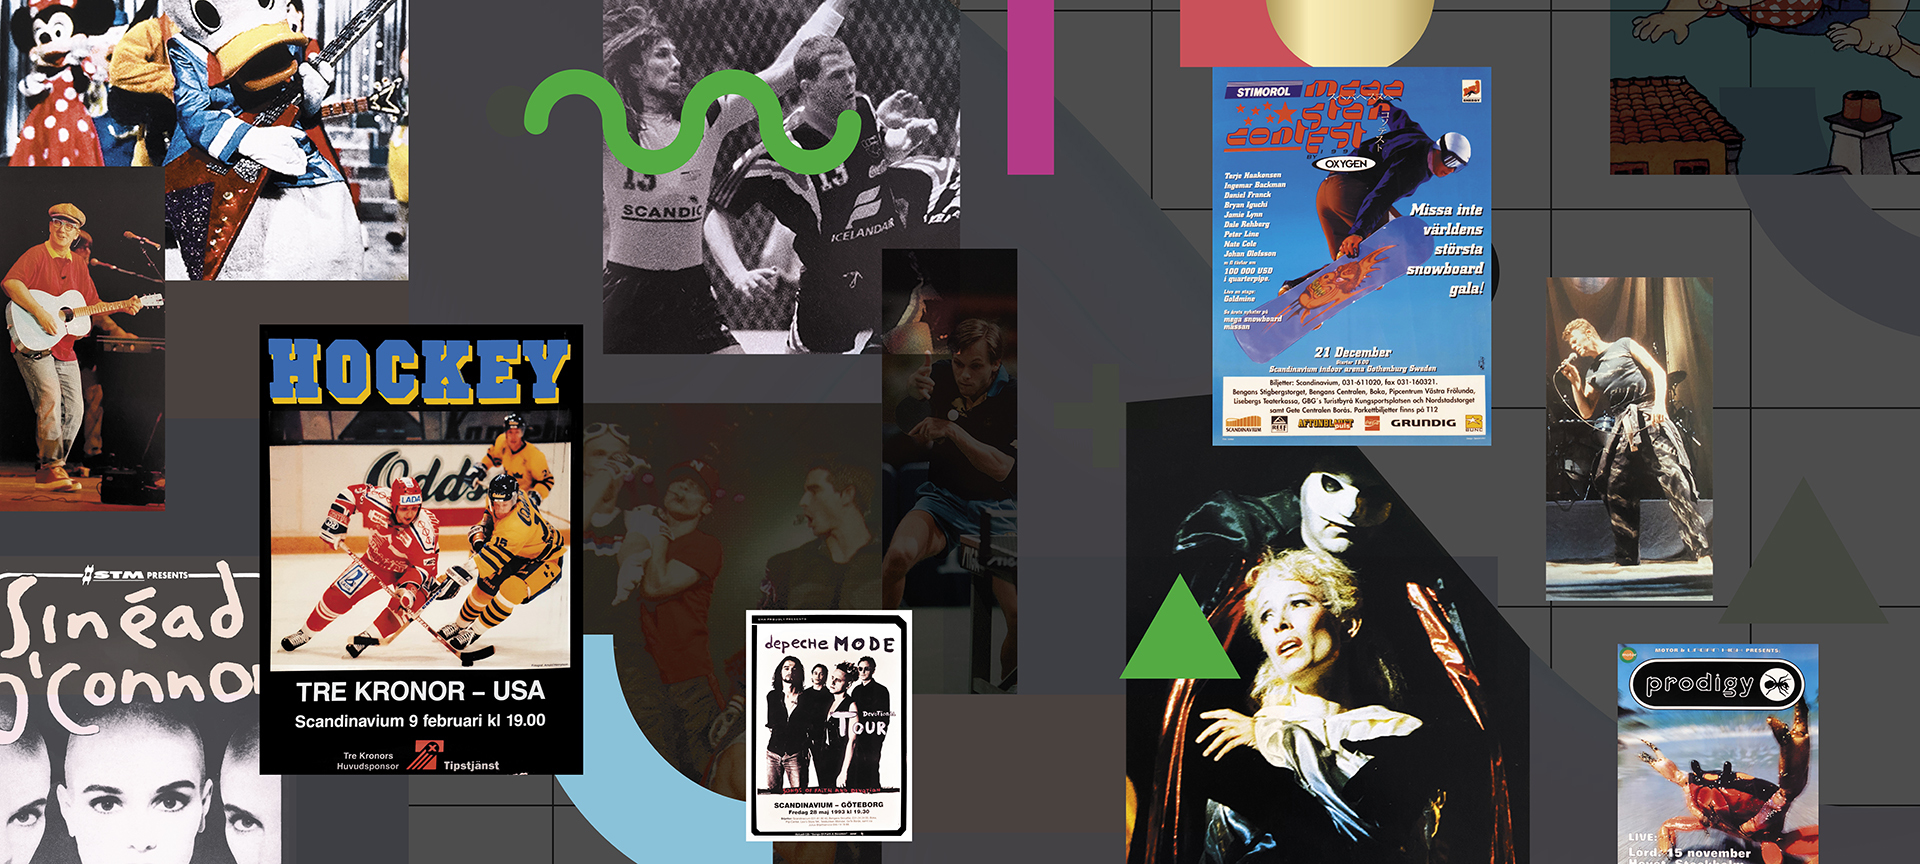 Ett kollage med bilder från evenemang på Scandinavium under 1990 till 1999. Bland annat syns Sinead o'connor, Depeche Mode, David Bowie och Prodigy.